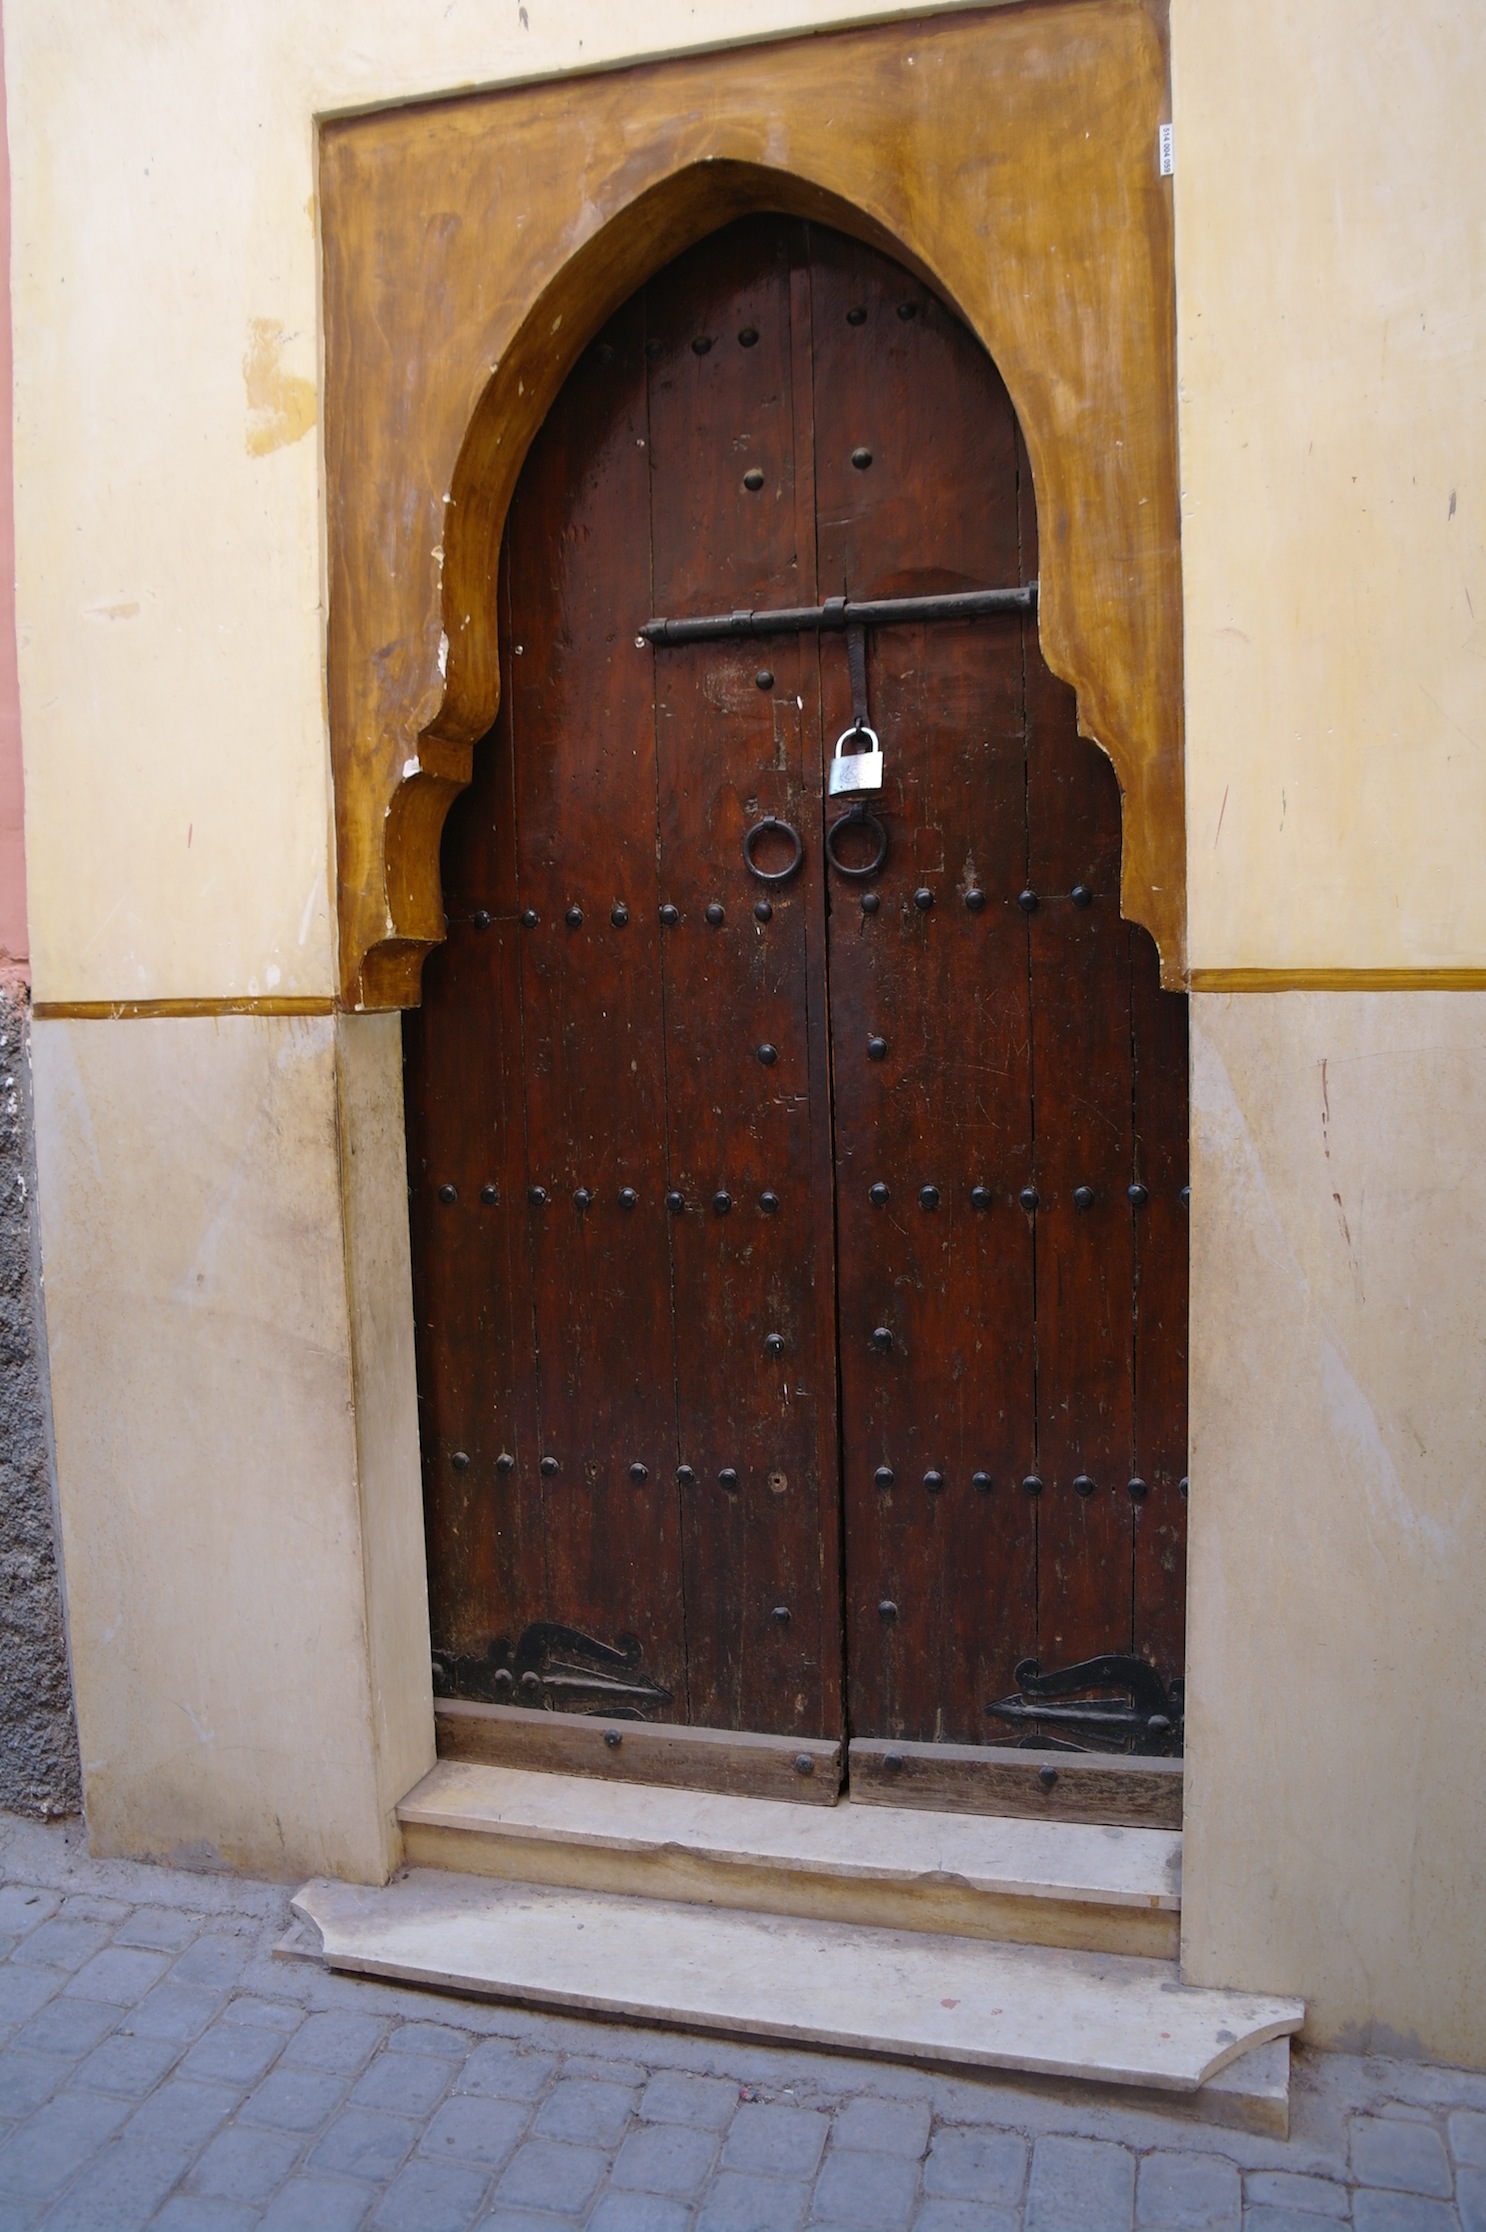 Locked away behind closed doors, Marrakech. By Kamel El Sayed